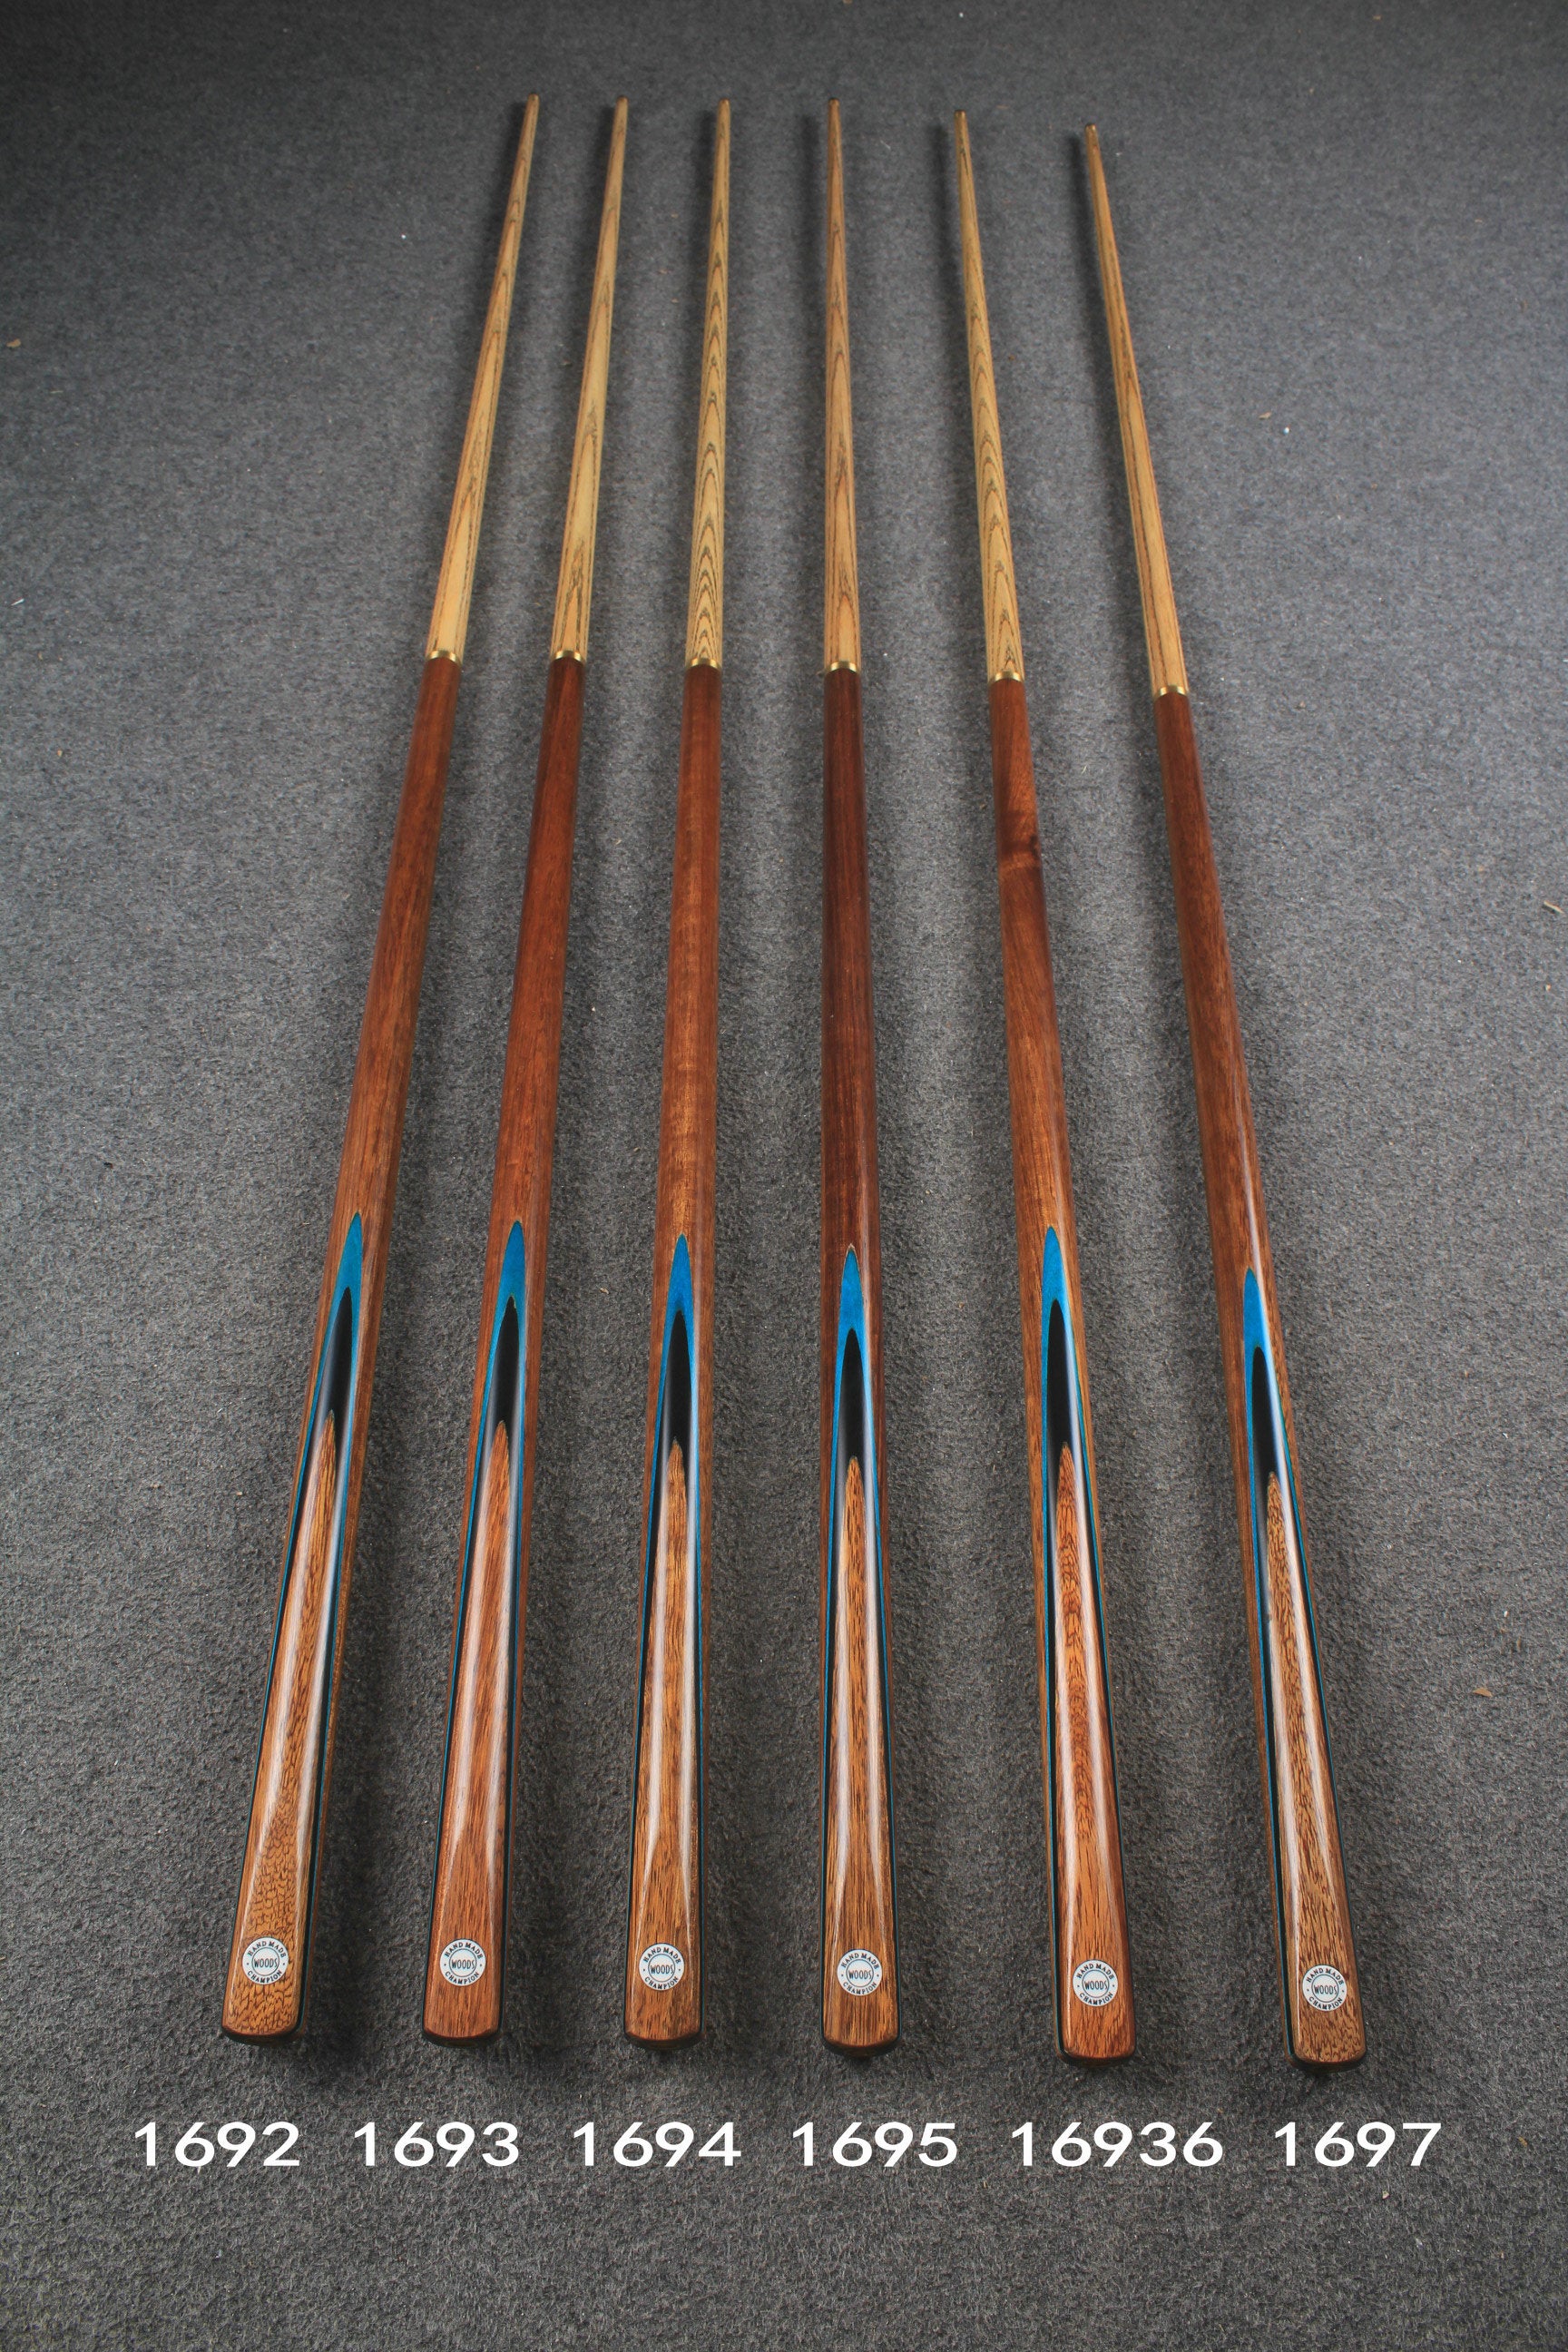 WOODS CUES, 1/2 handmade ash 57" snooker / pool cue #1692-#1697